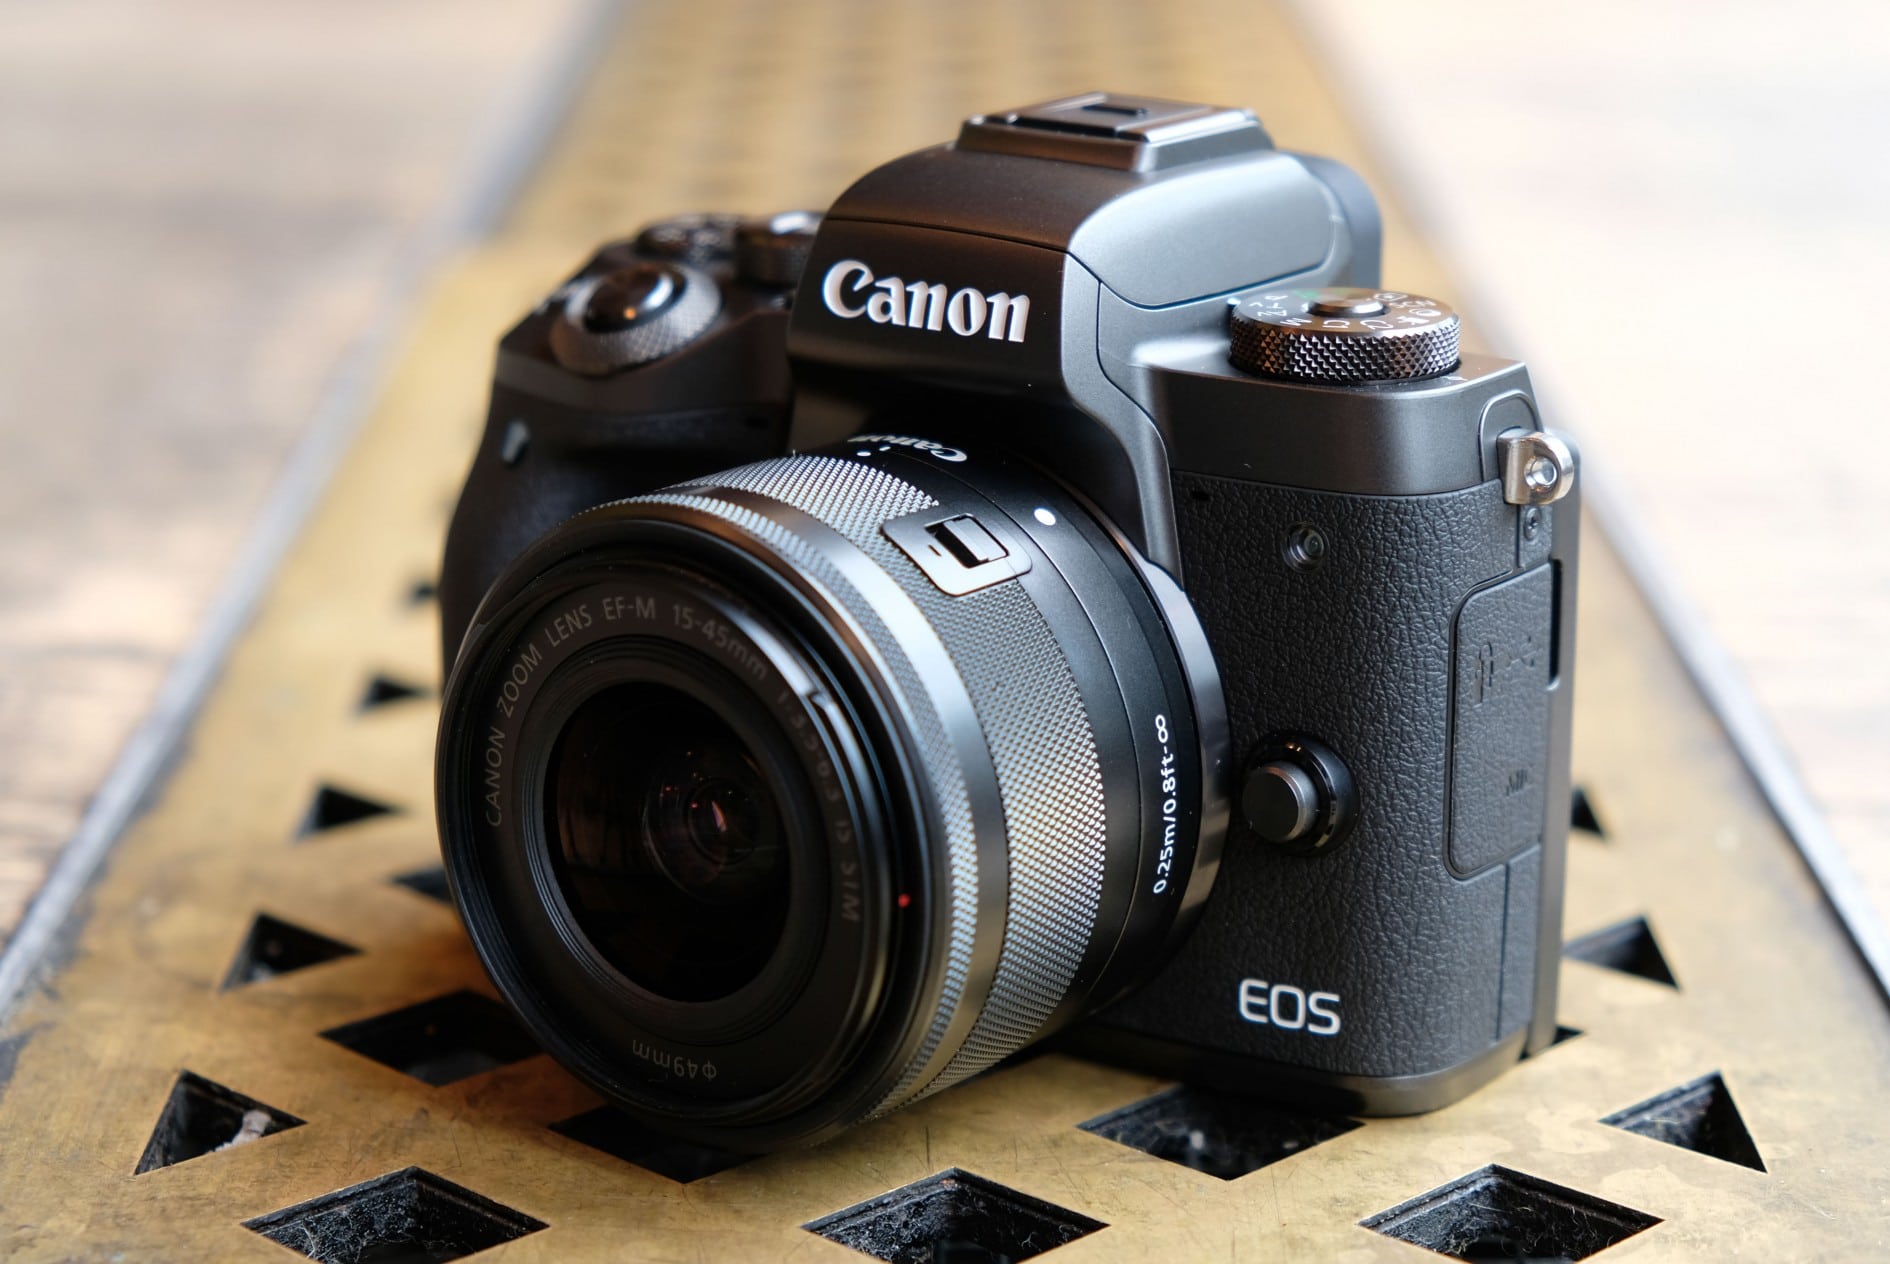 Rò rỉ thông số của Canon EOS M7 và có khả năng dòng M sẽ bị khai tử